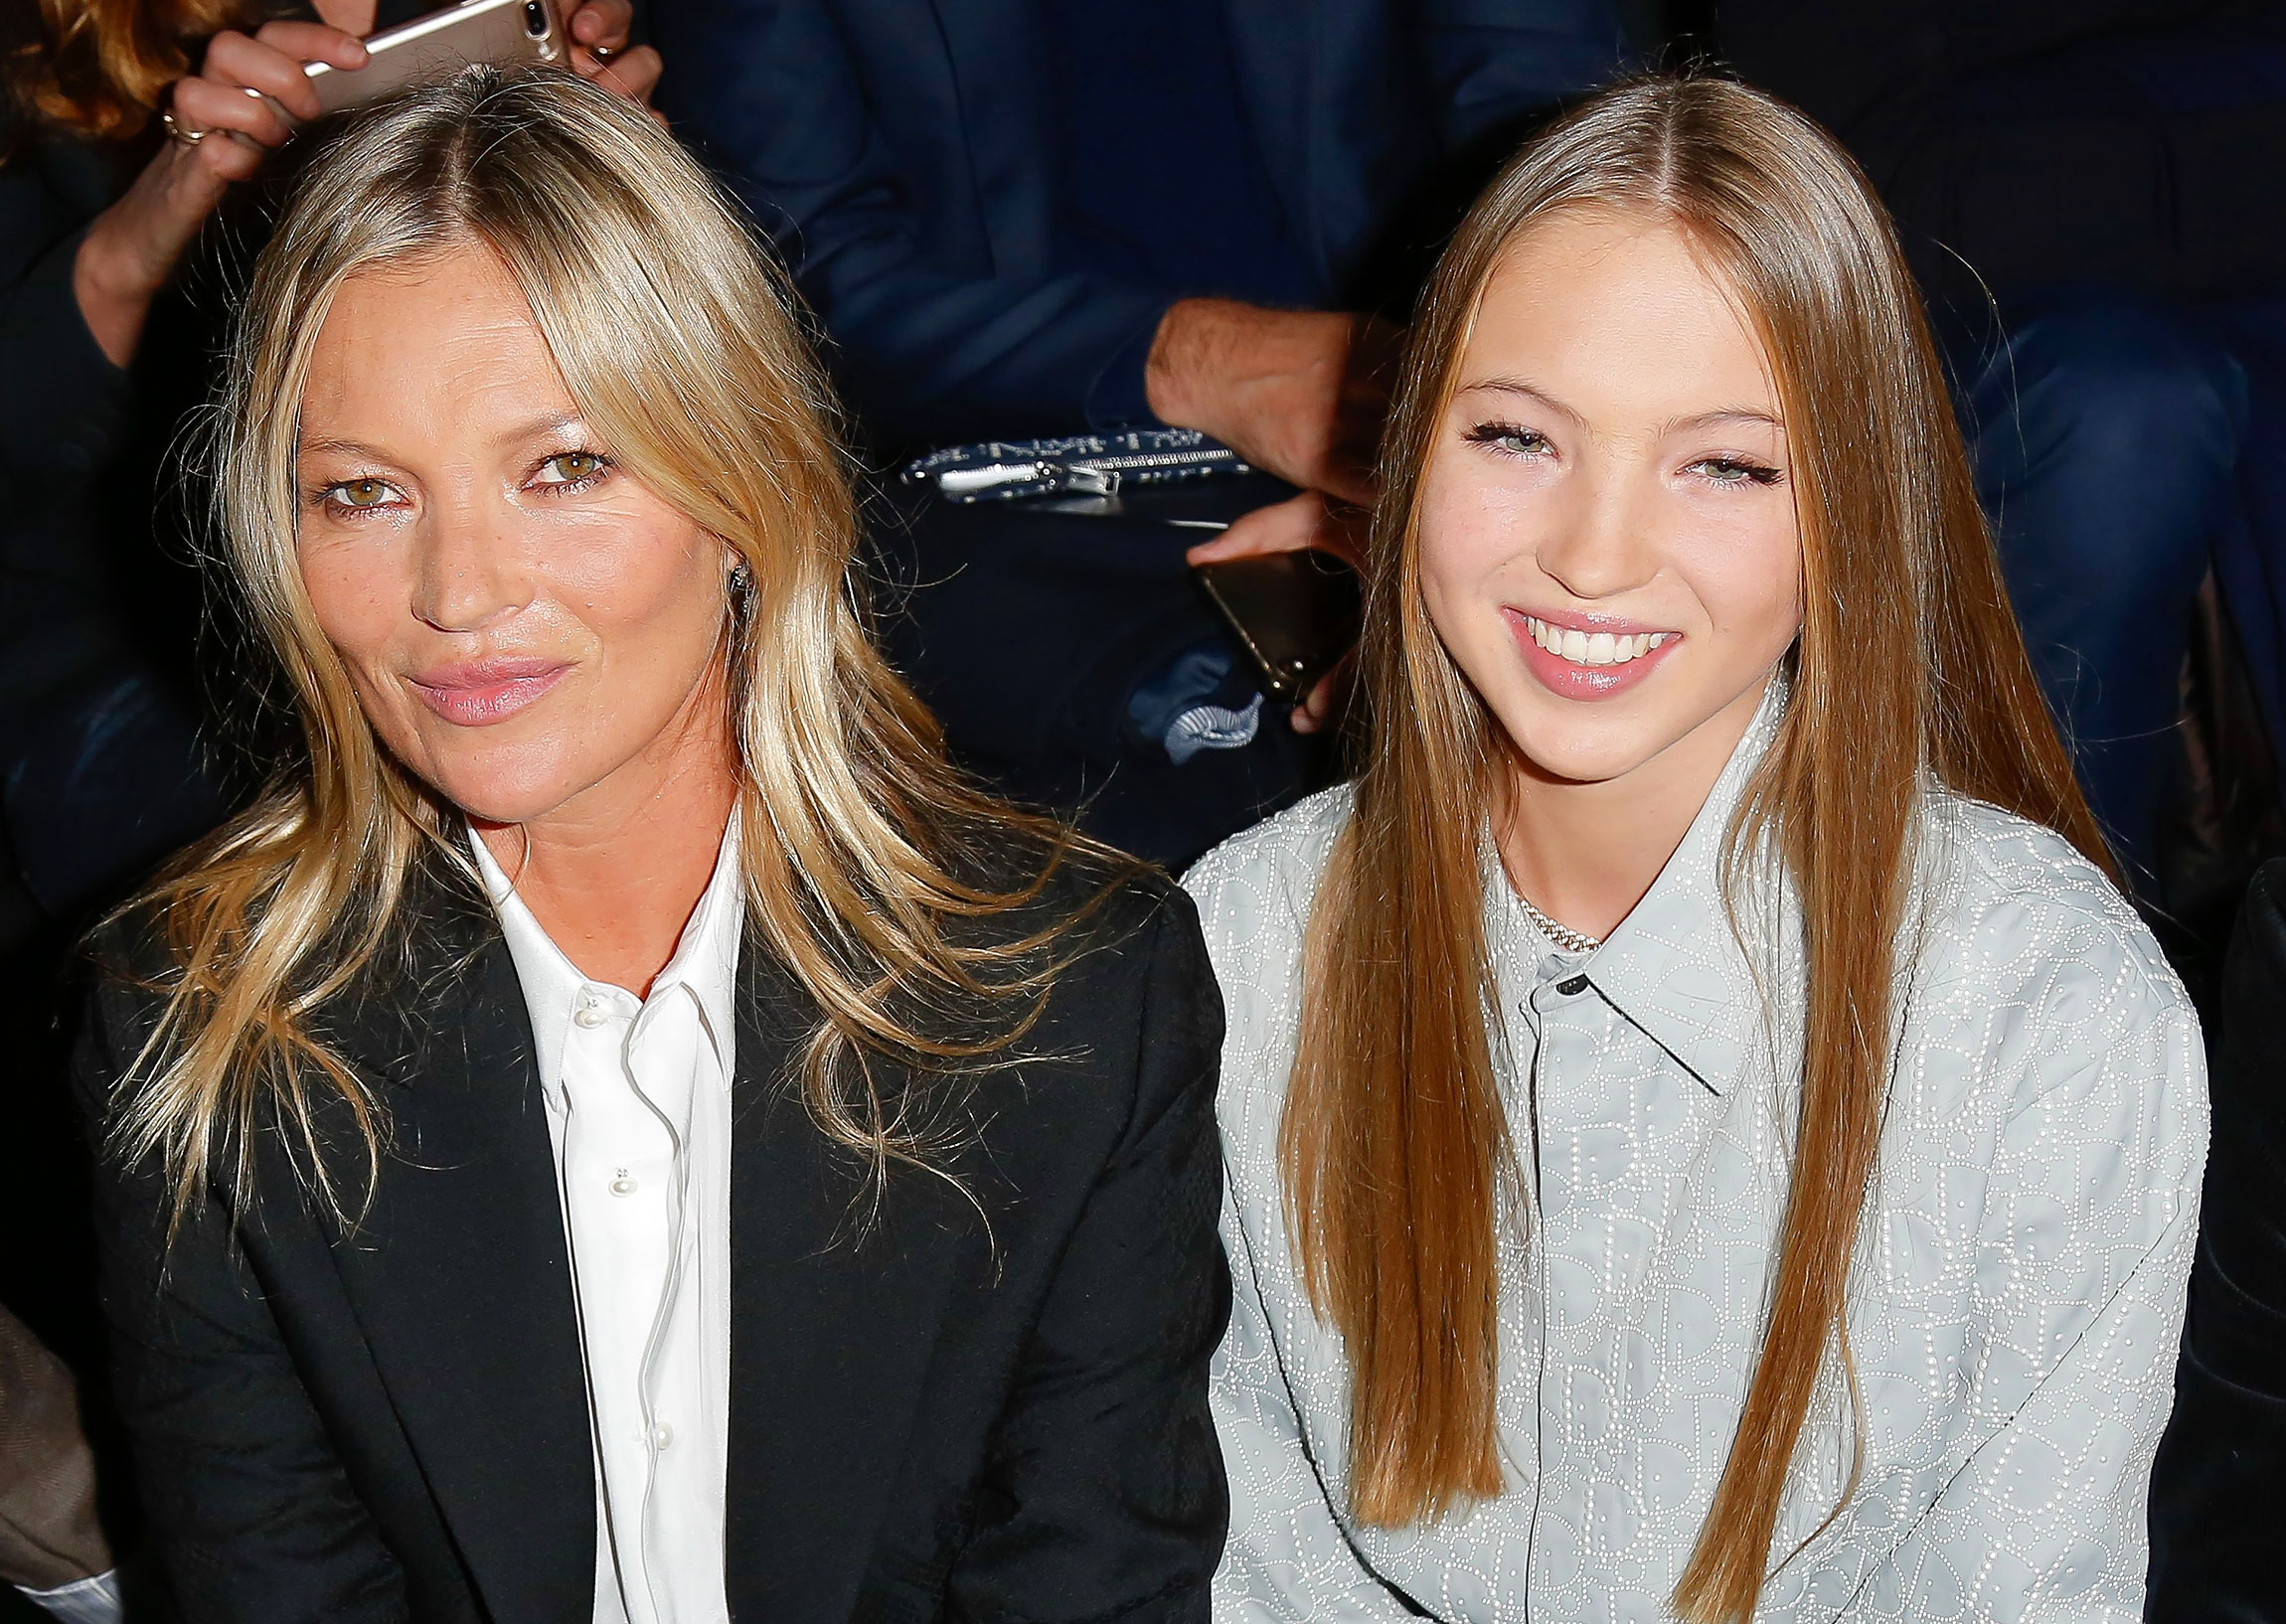 Encommium verkiezen shit Kate Moss Drops Merchandise, Models the Line With Daughter Lila